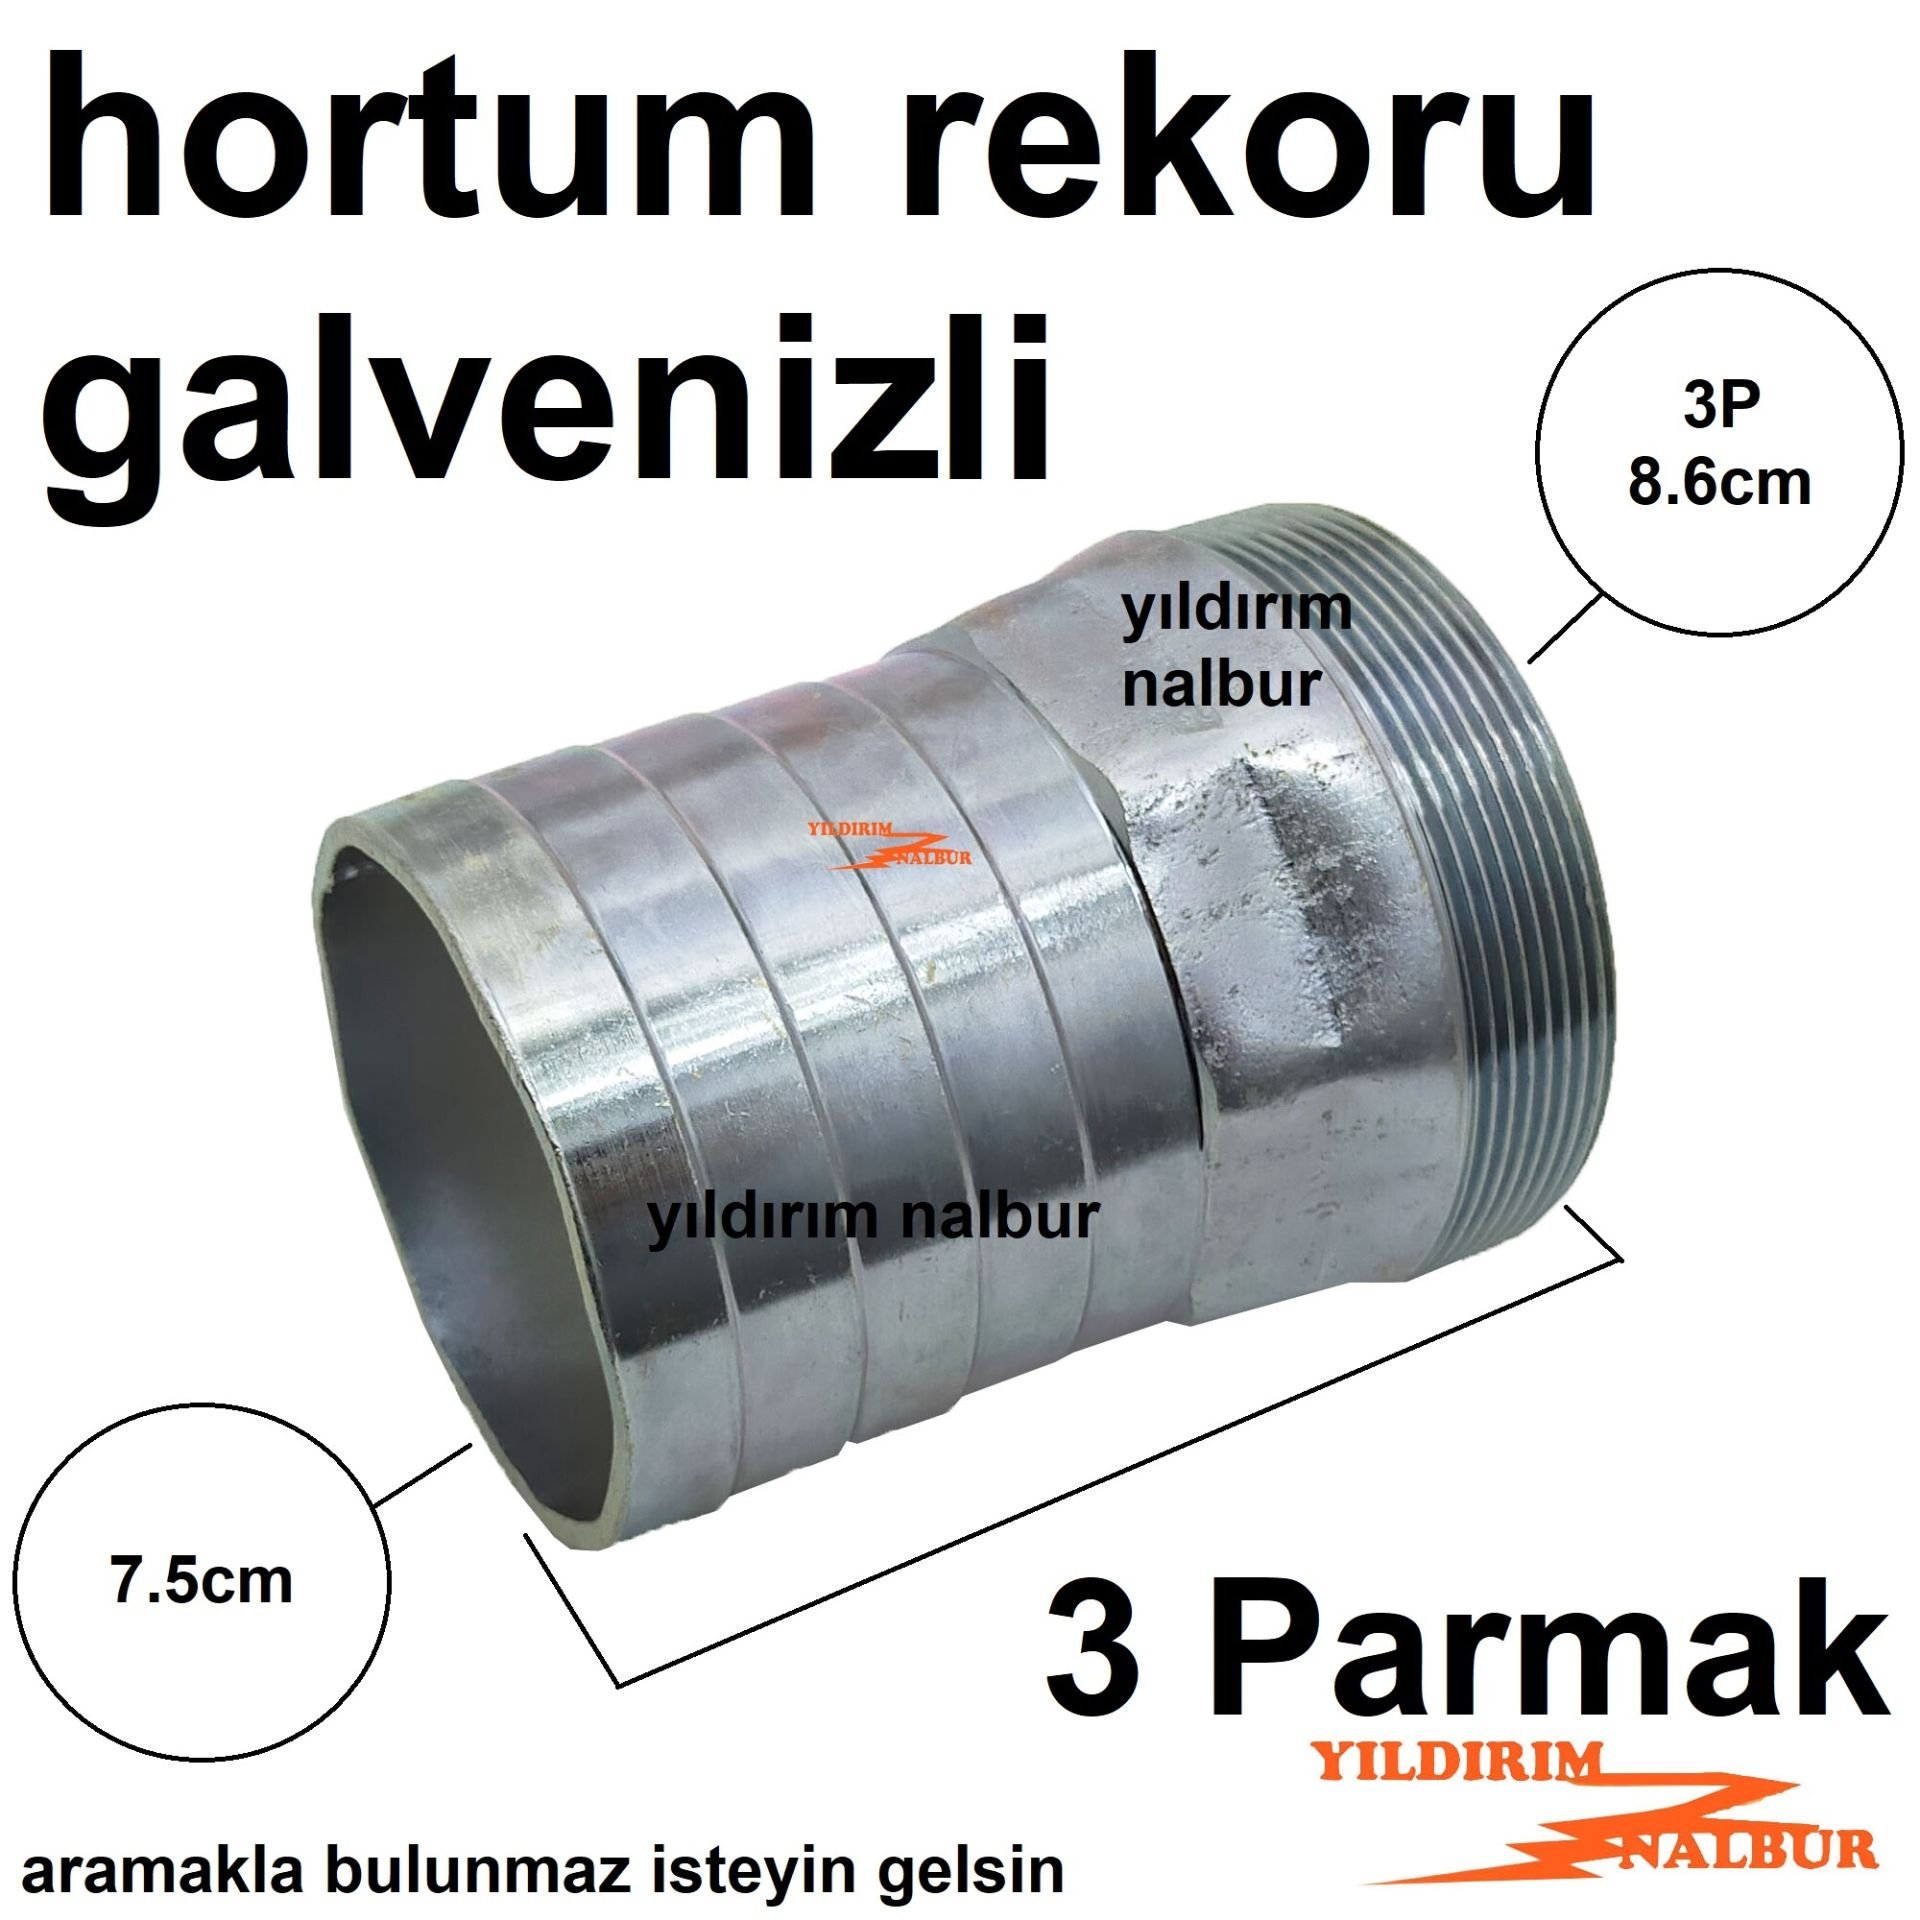 GALVENİZLİ HORTUM REKORU 3P  SU DEPOSU REKORU 3 PARMAK